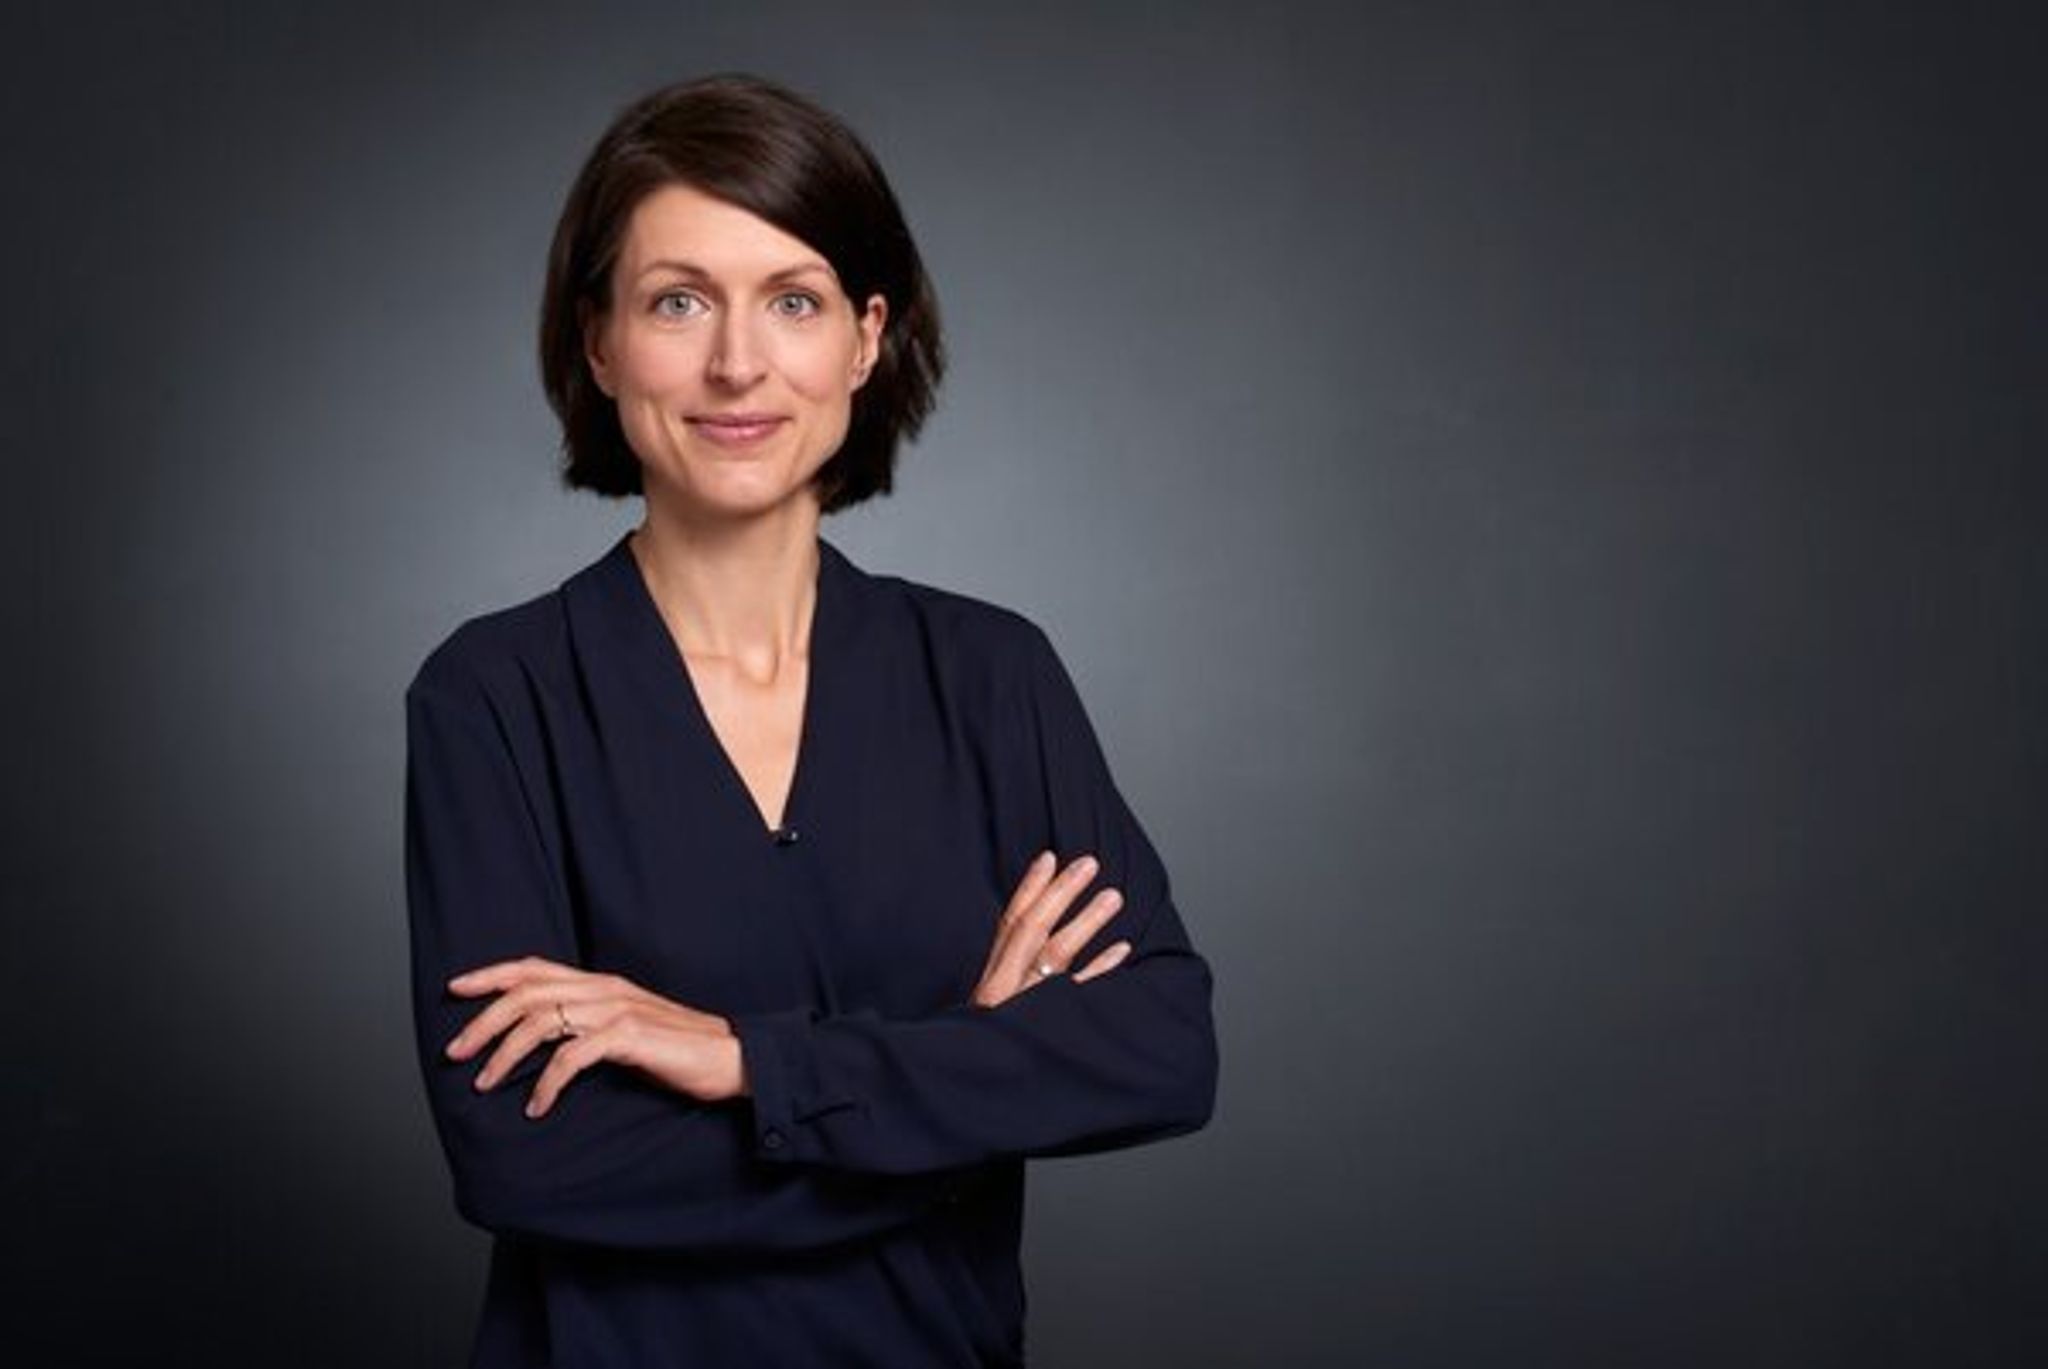 Franziska Wittau 
Franziska Wittau wird neue Chefin der Landeszentrale fr politische Bildung.  -/Franziska Wittau/dpa  DPA